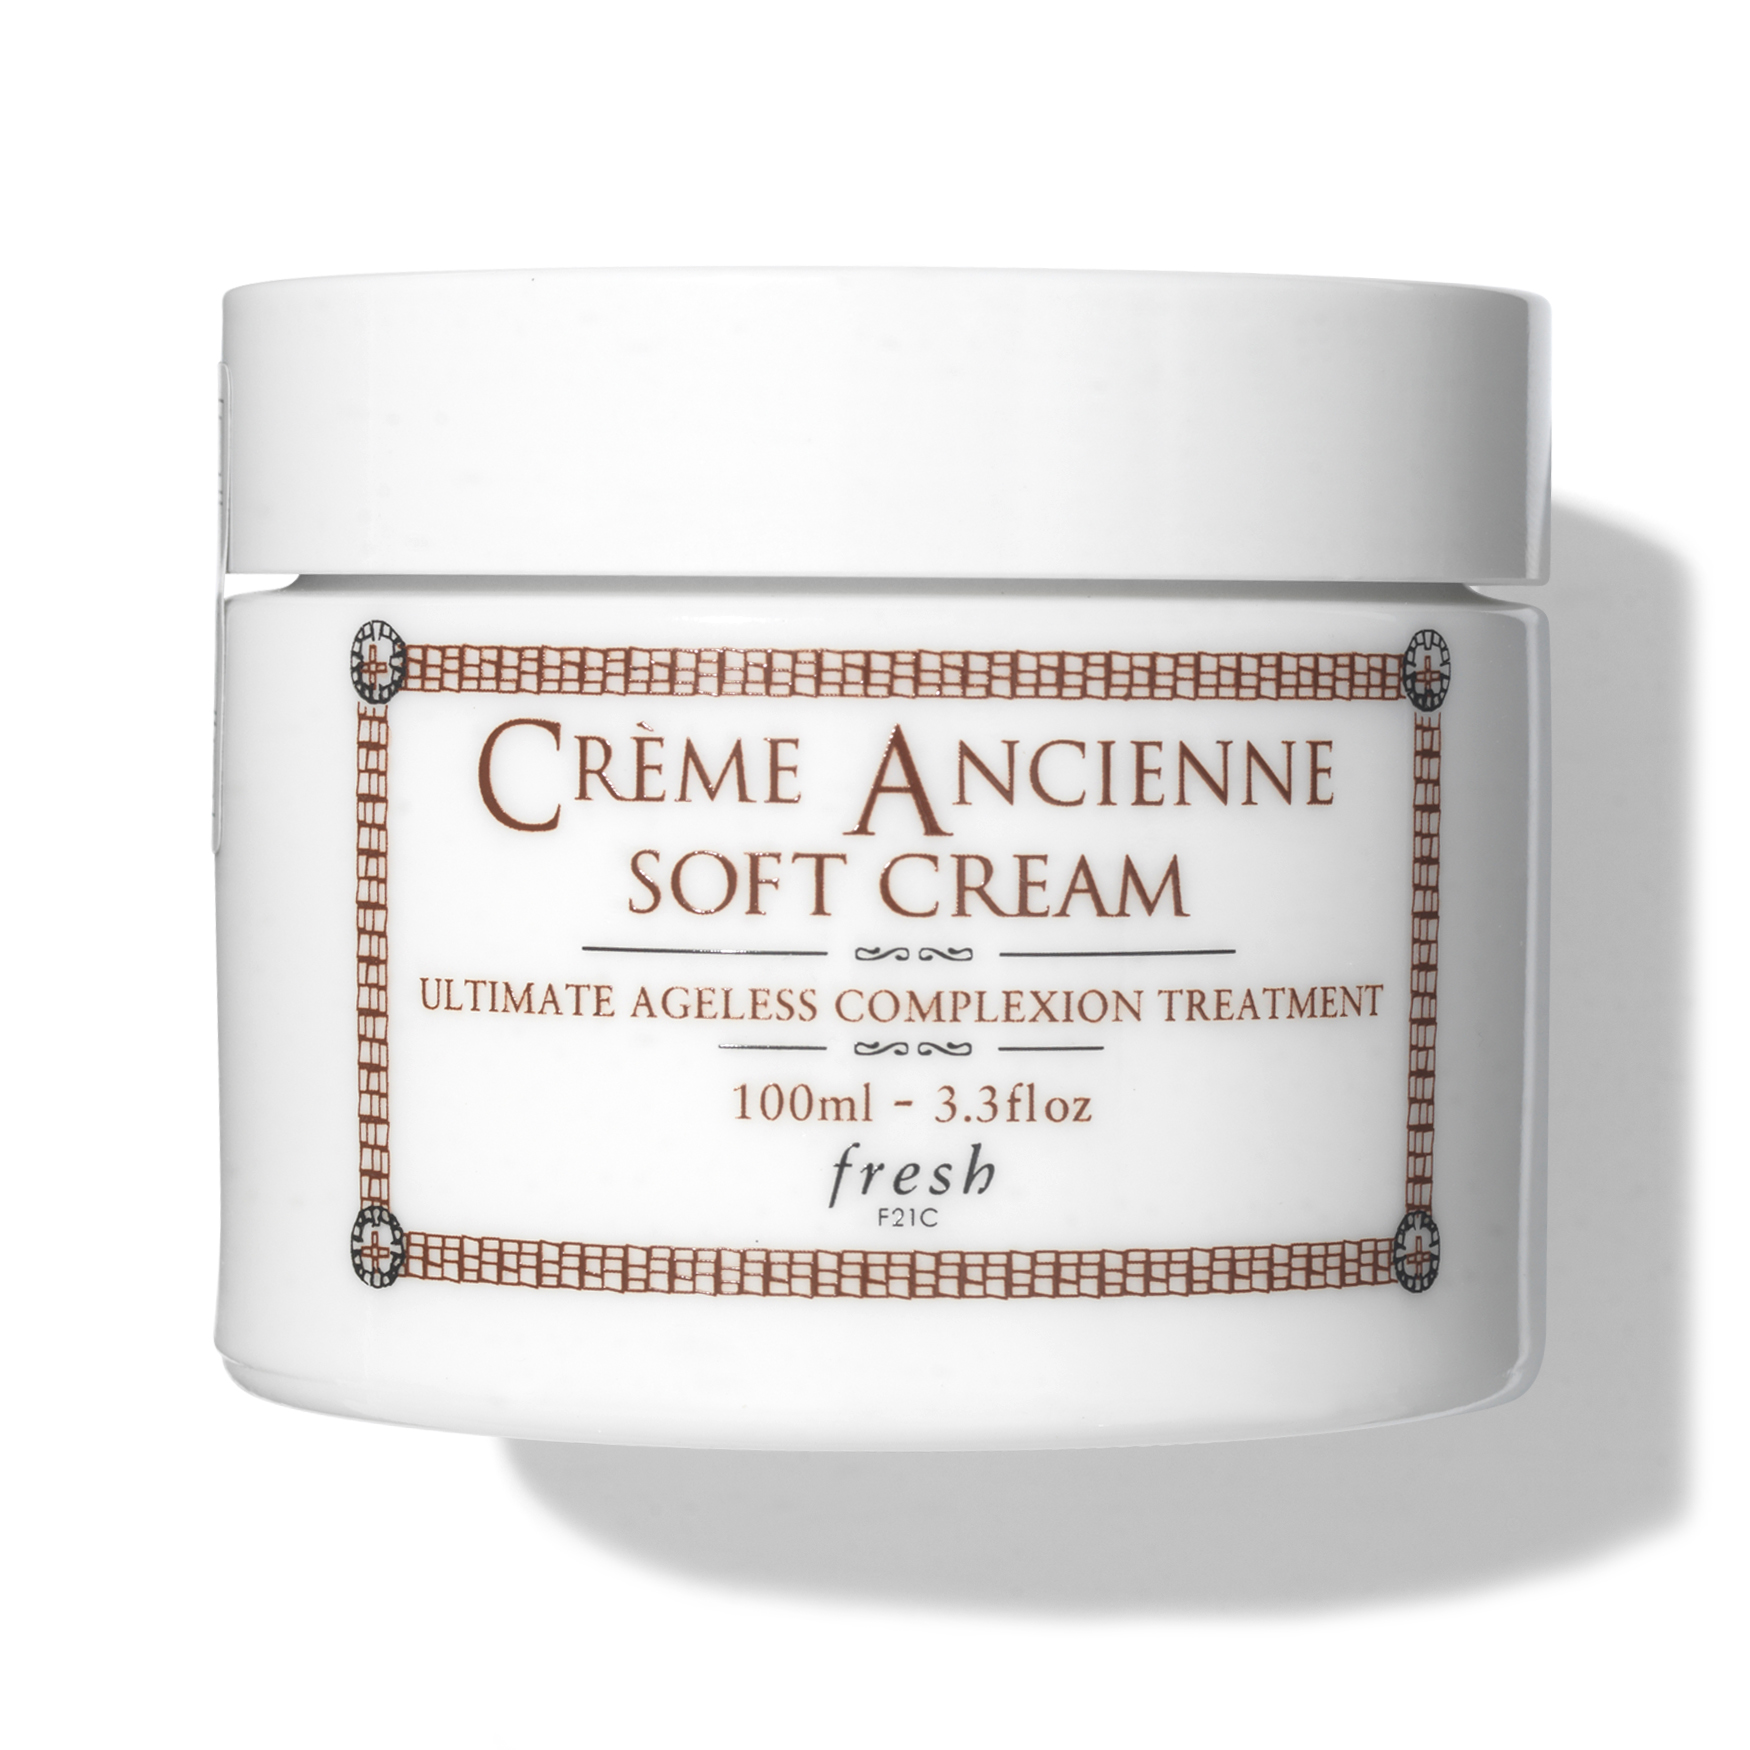 Fresh Crème Ancienne Soft Cream